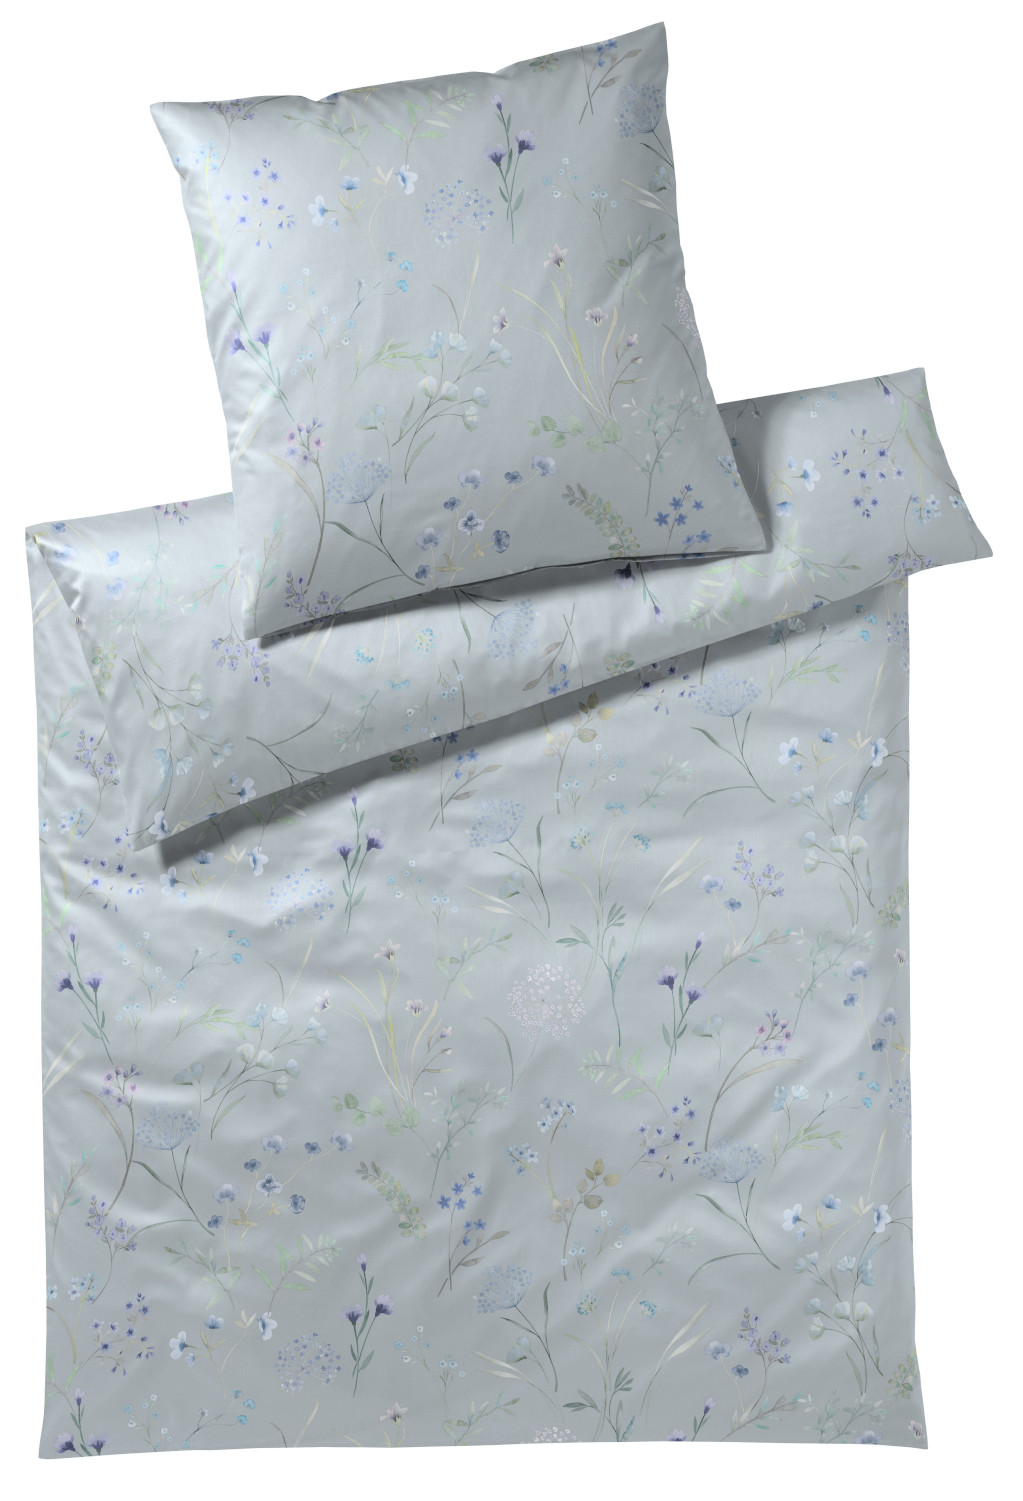 Elegante Seiden Satin Bettwäsche Deluxe aus 100% Baumwolle, 155x220 cm